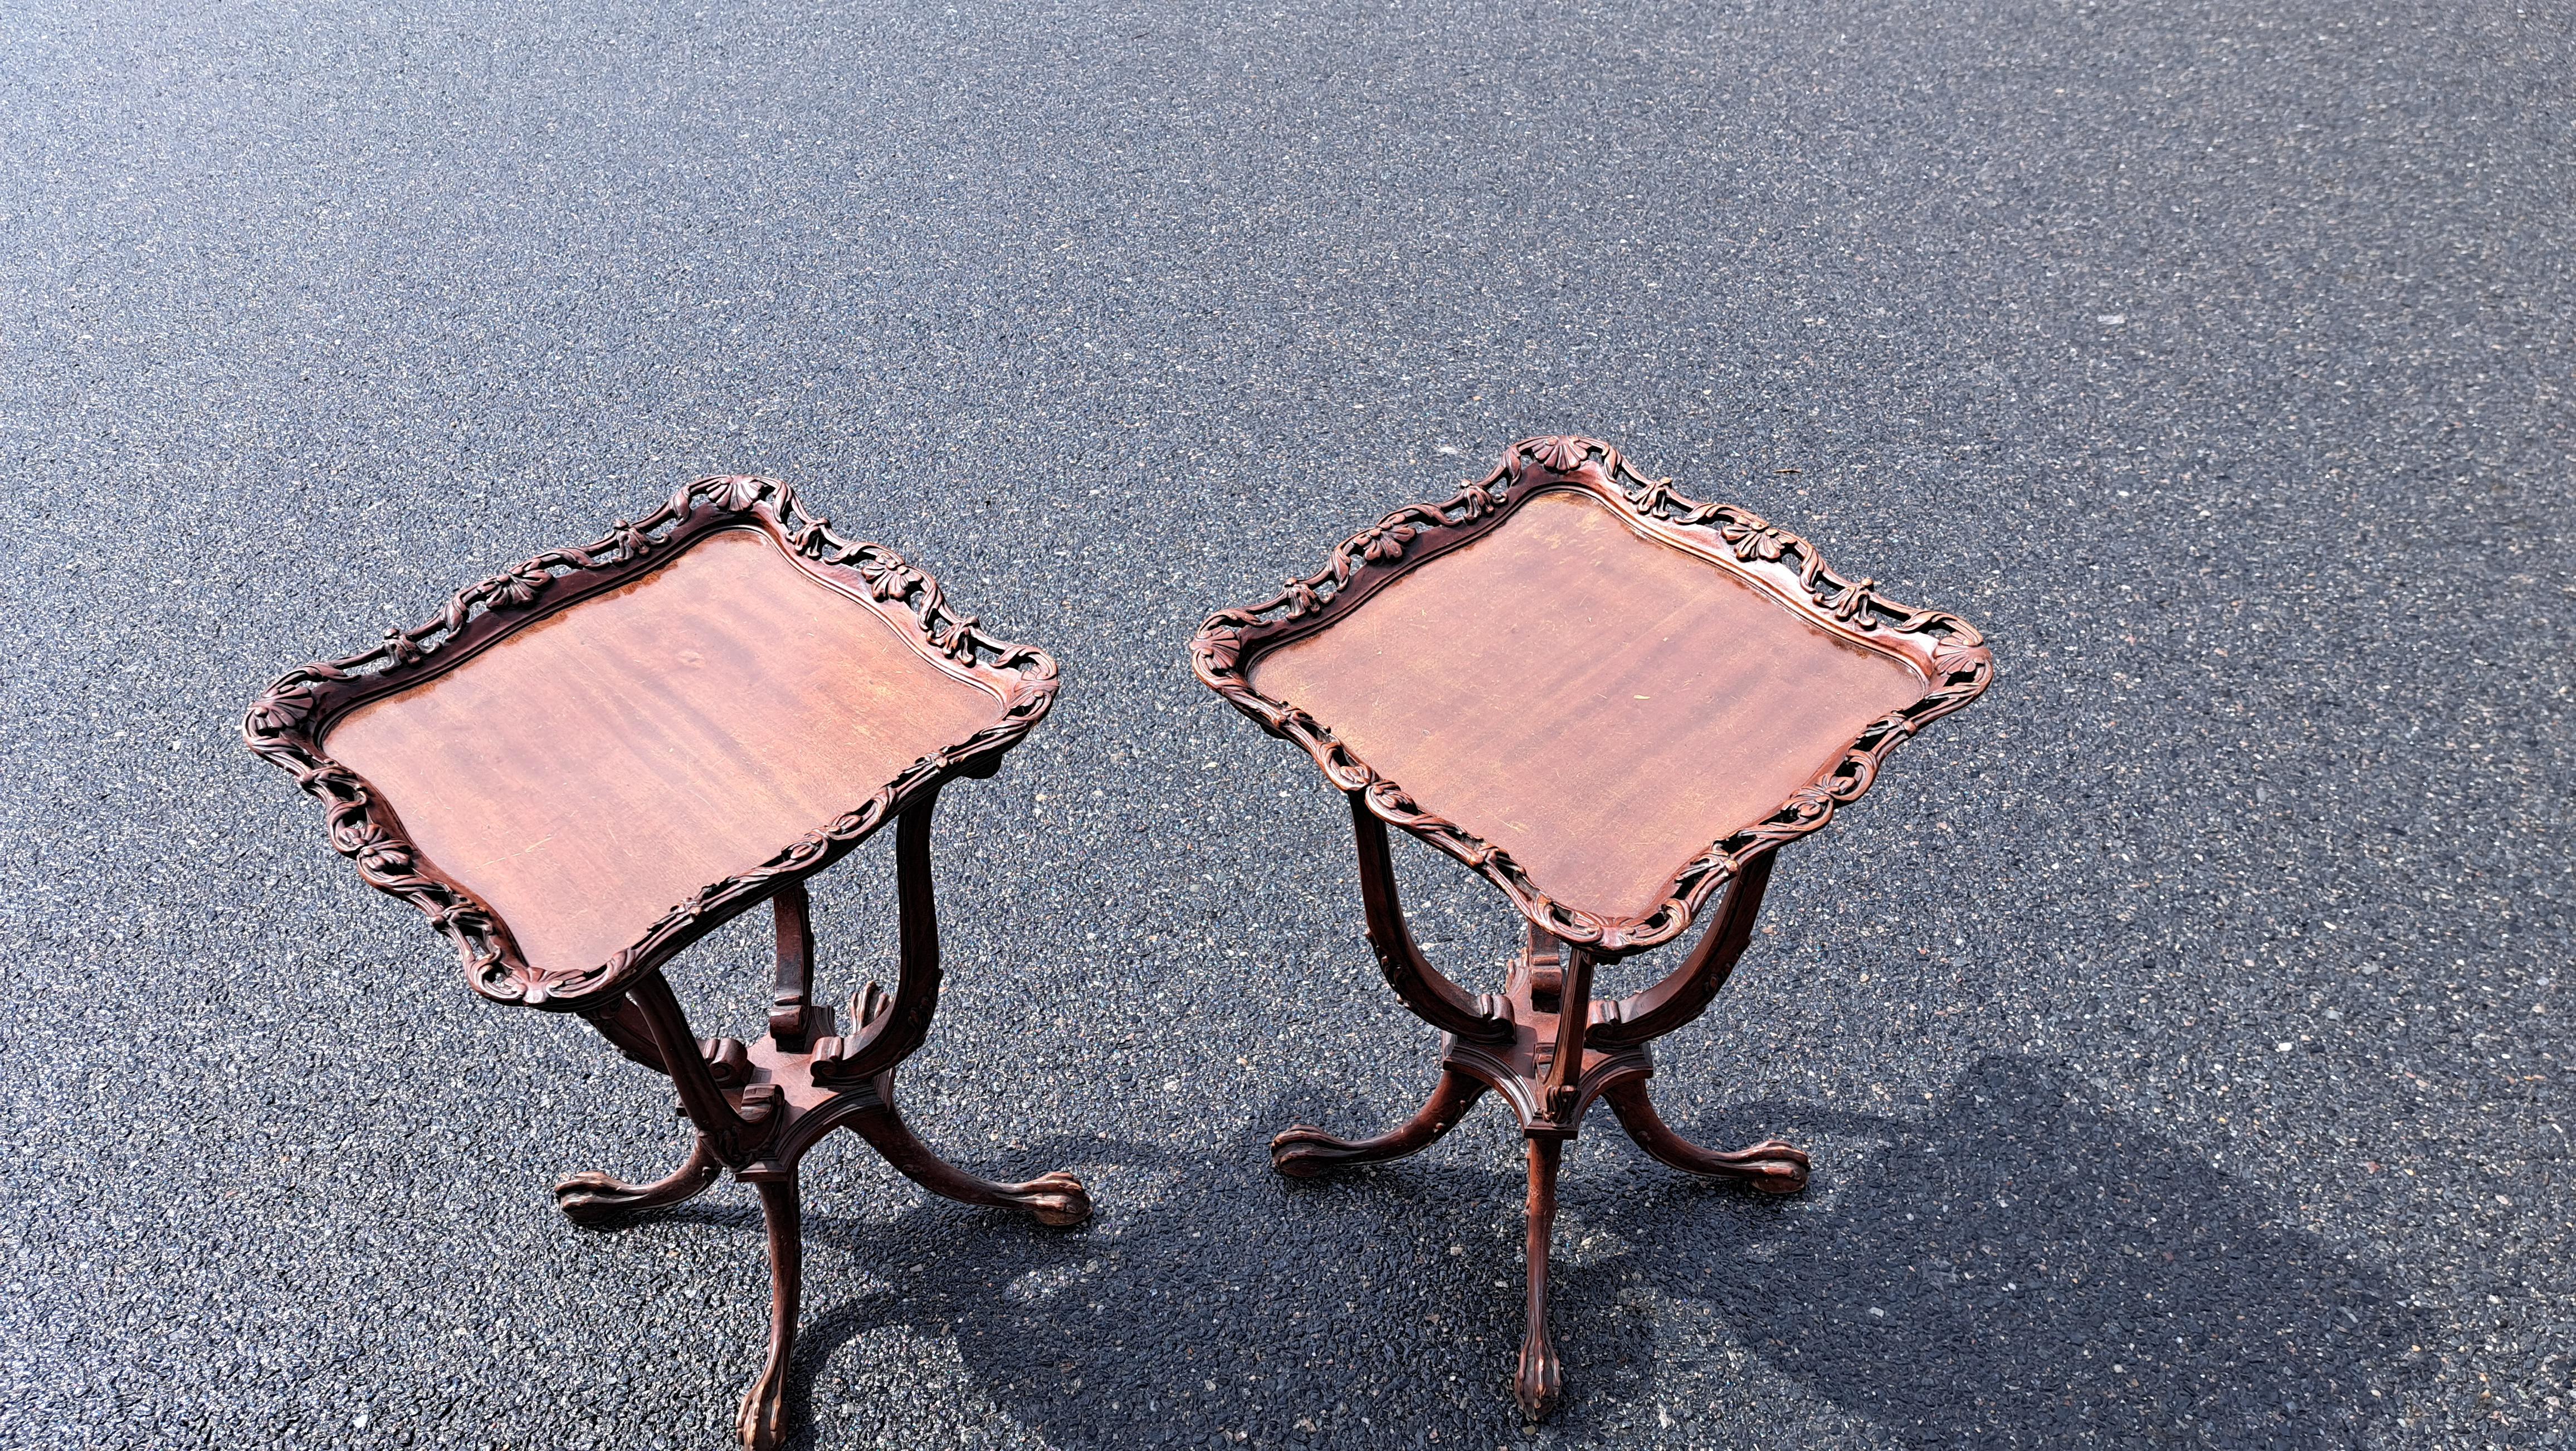 Zwei Beistelltische aus Mahagoni im Stil von George III. mit vier Tatzenfüßen und geschnitzten Details, darunter offene Schnitzereien, die die Tischplatten einrahmen.